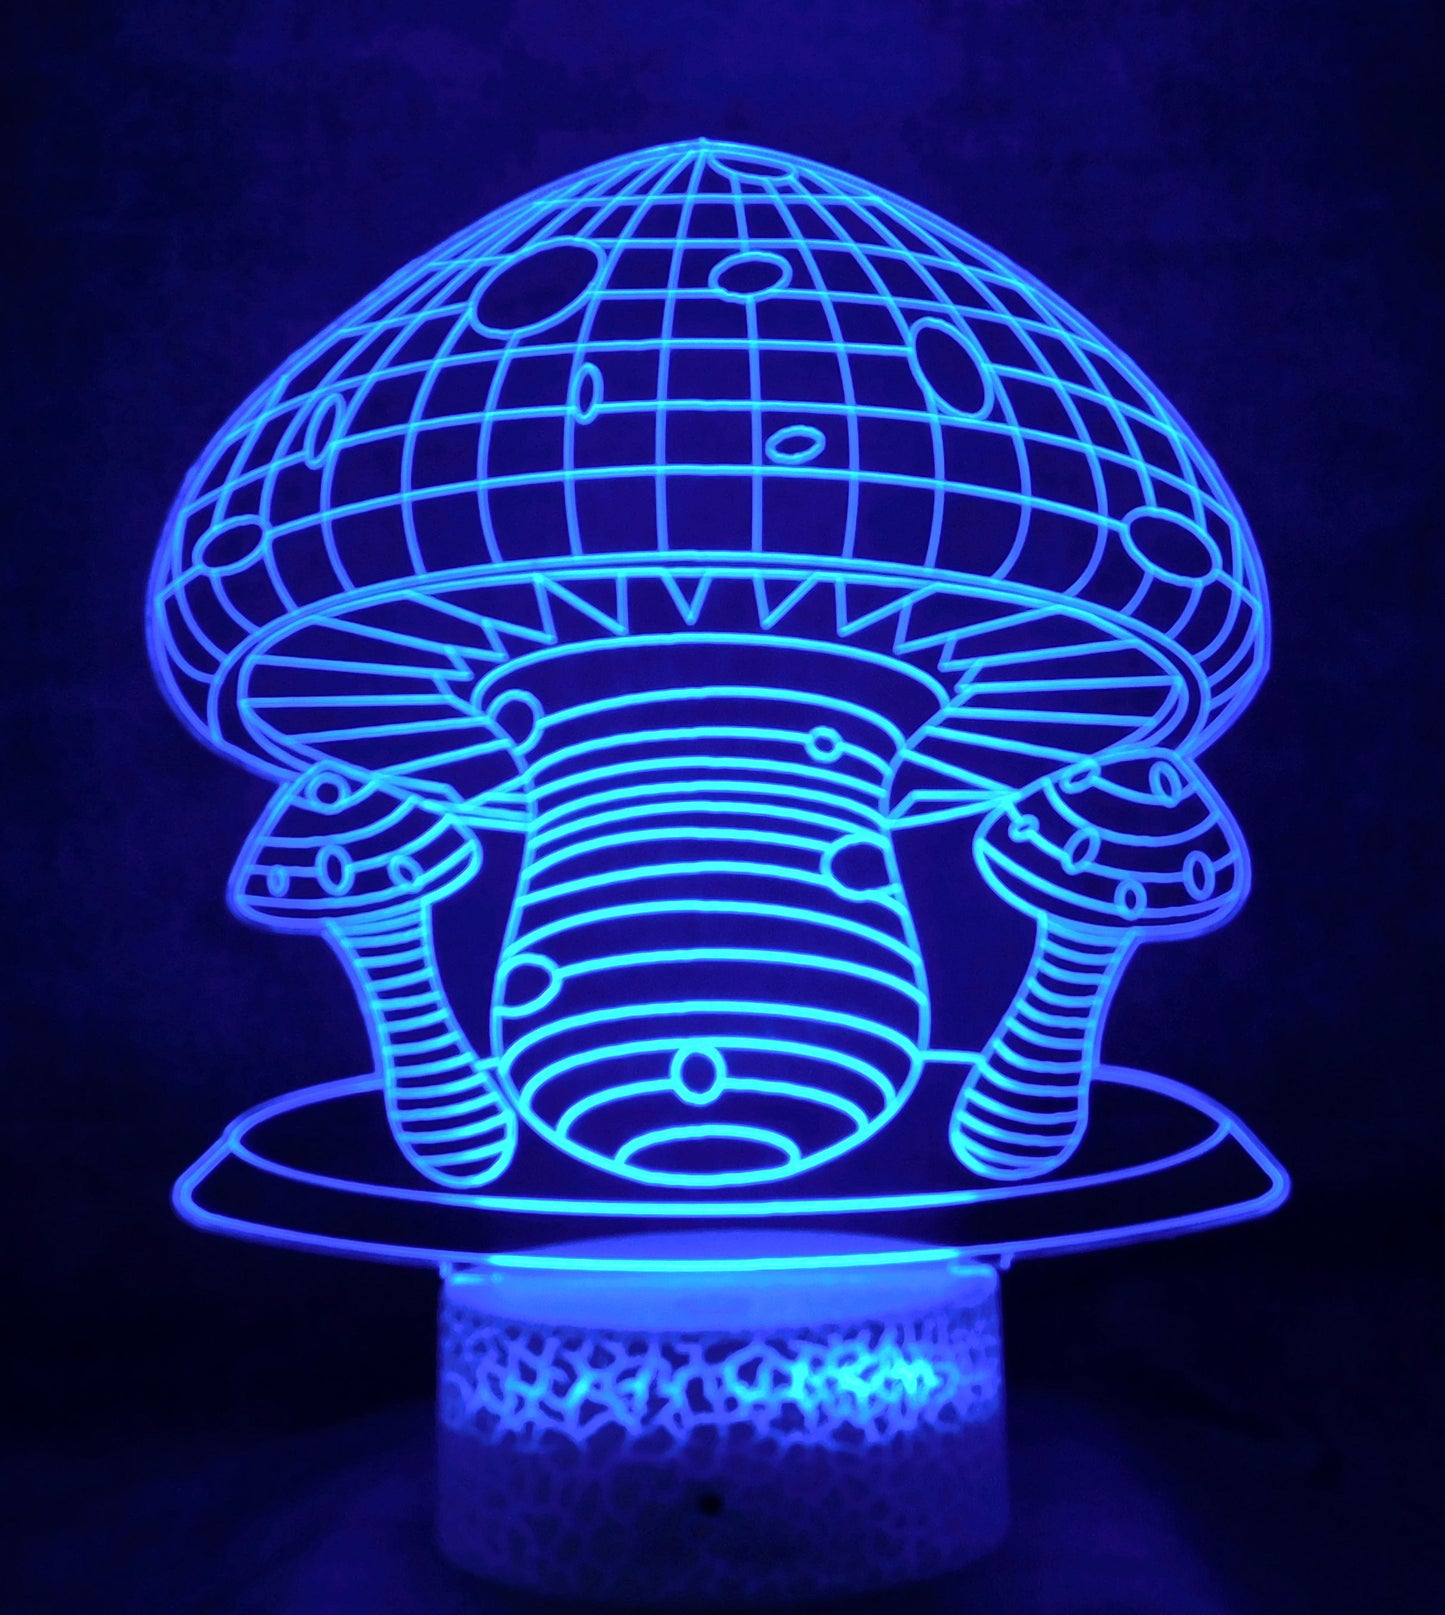 Mushroom 3-D Optical Illusion Multicolored Light